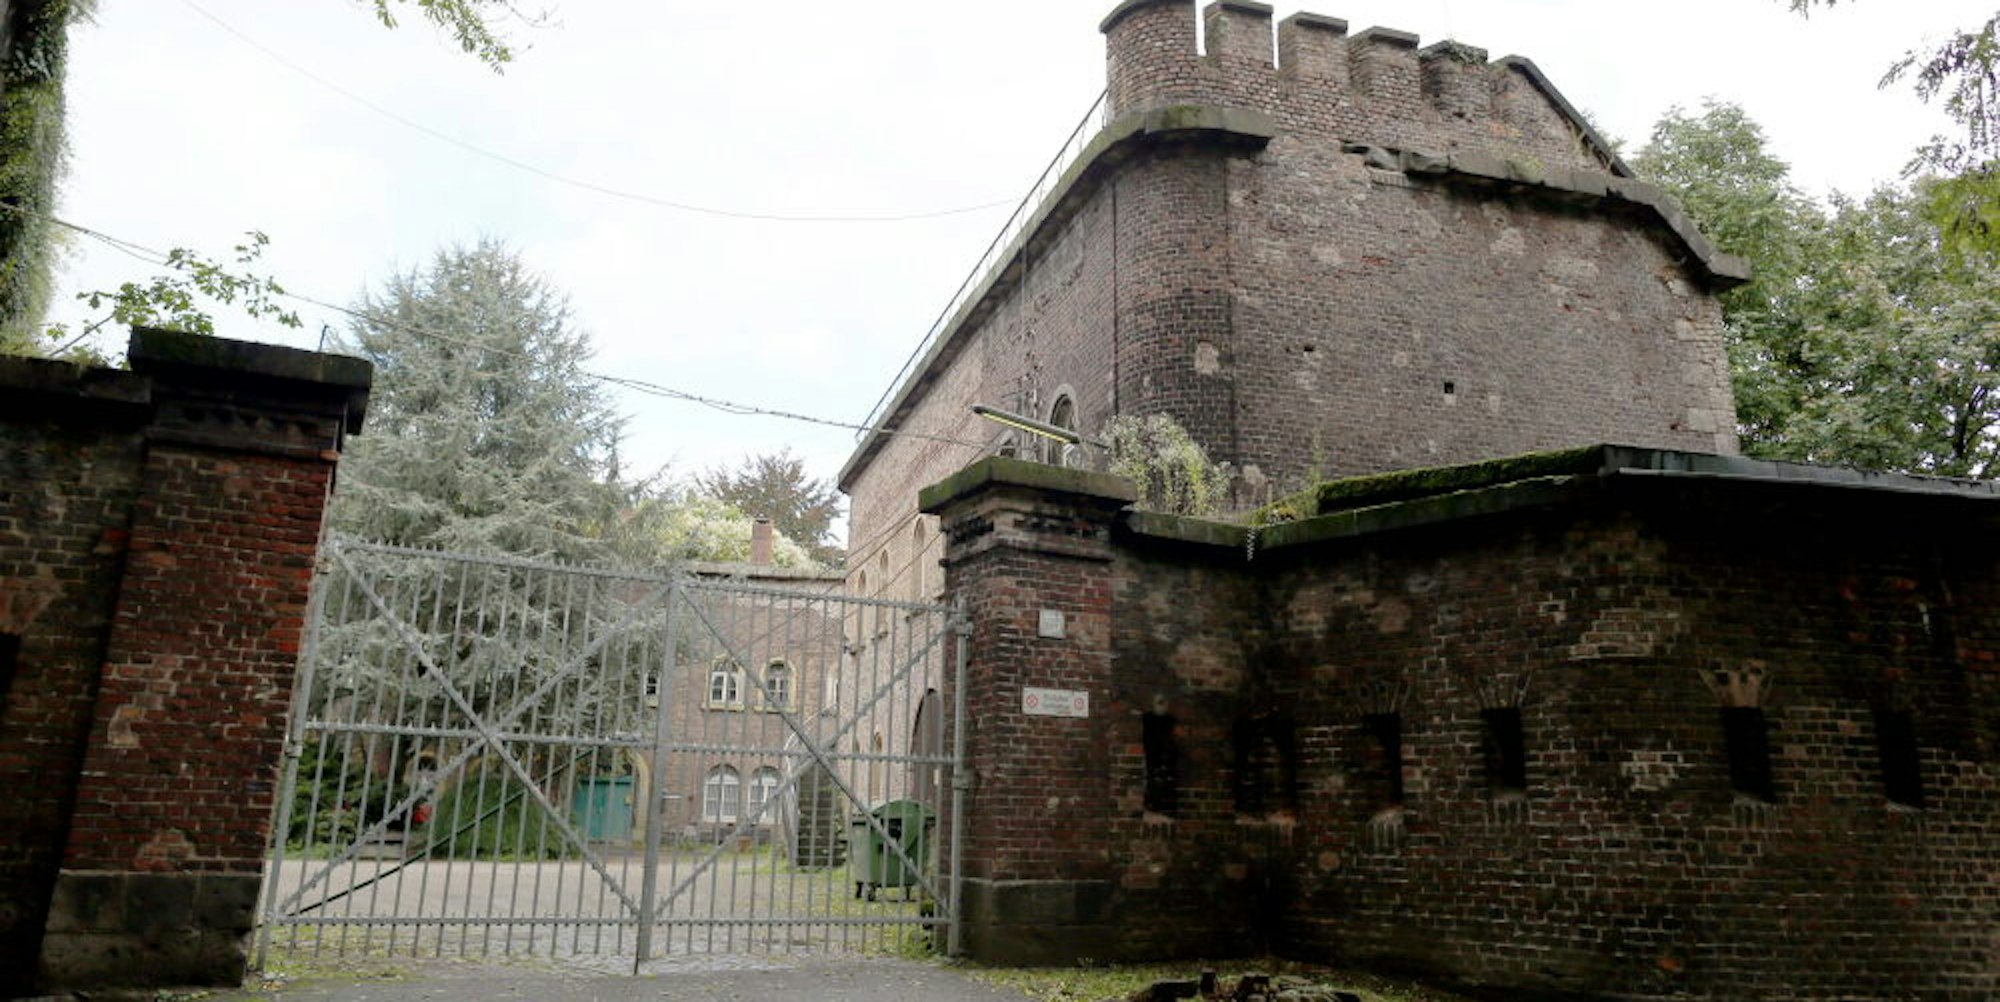 Der Zugang zum Fort X am Neusser Wall ist meist gesperrt, im Innenhof steht eine riesige Zeder, die von der Stadt als nicht mehr standsicher bezeichnet wird.